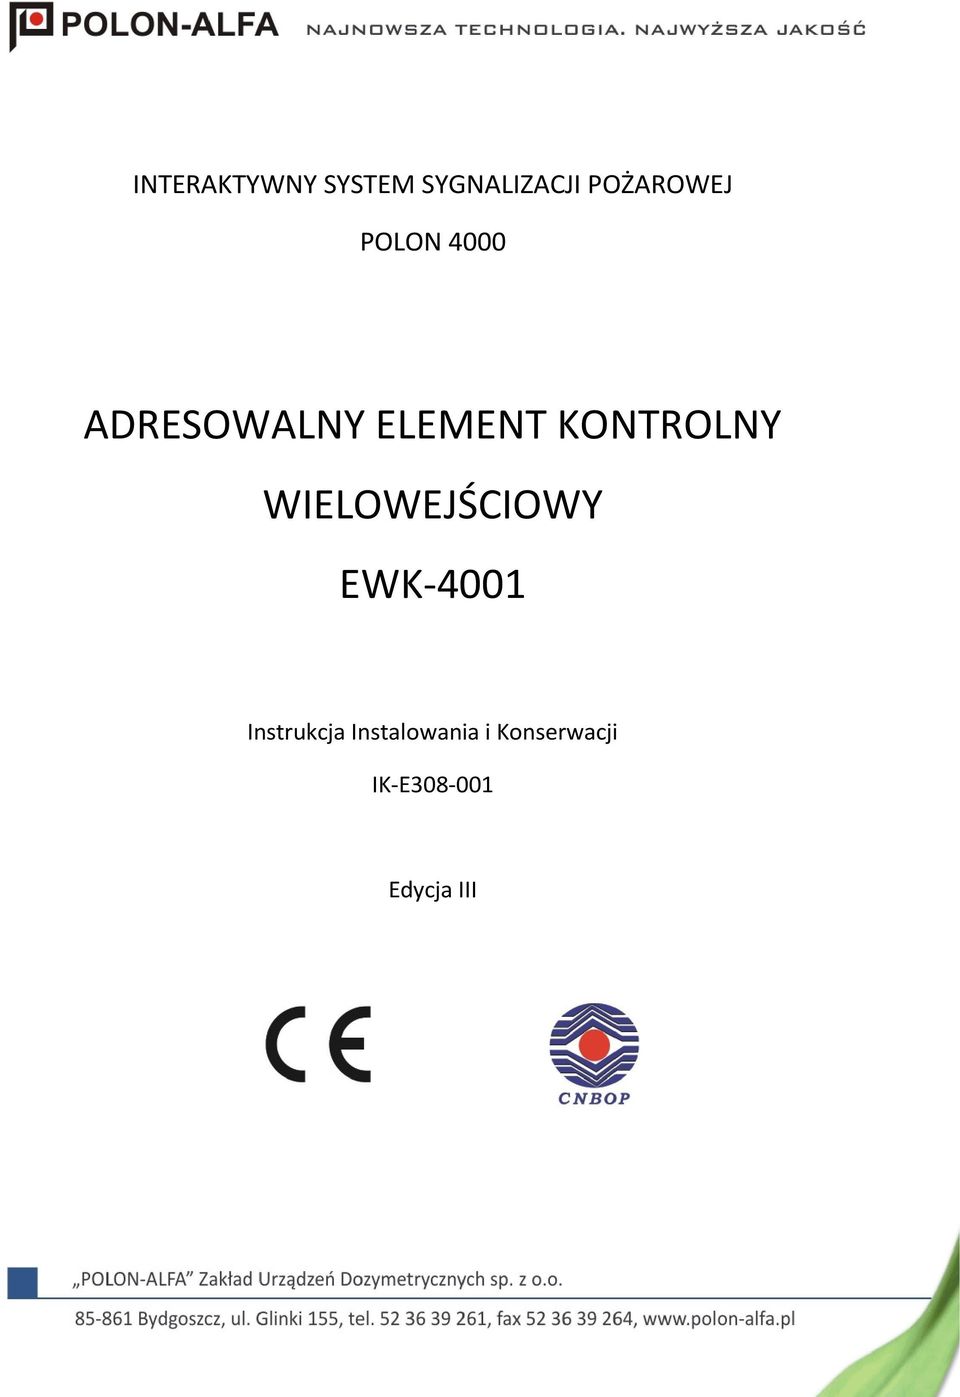 KONTROLNY WIELOWEJŚCIOWY EWK-4001